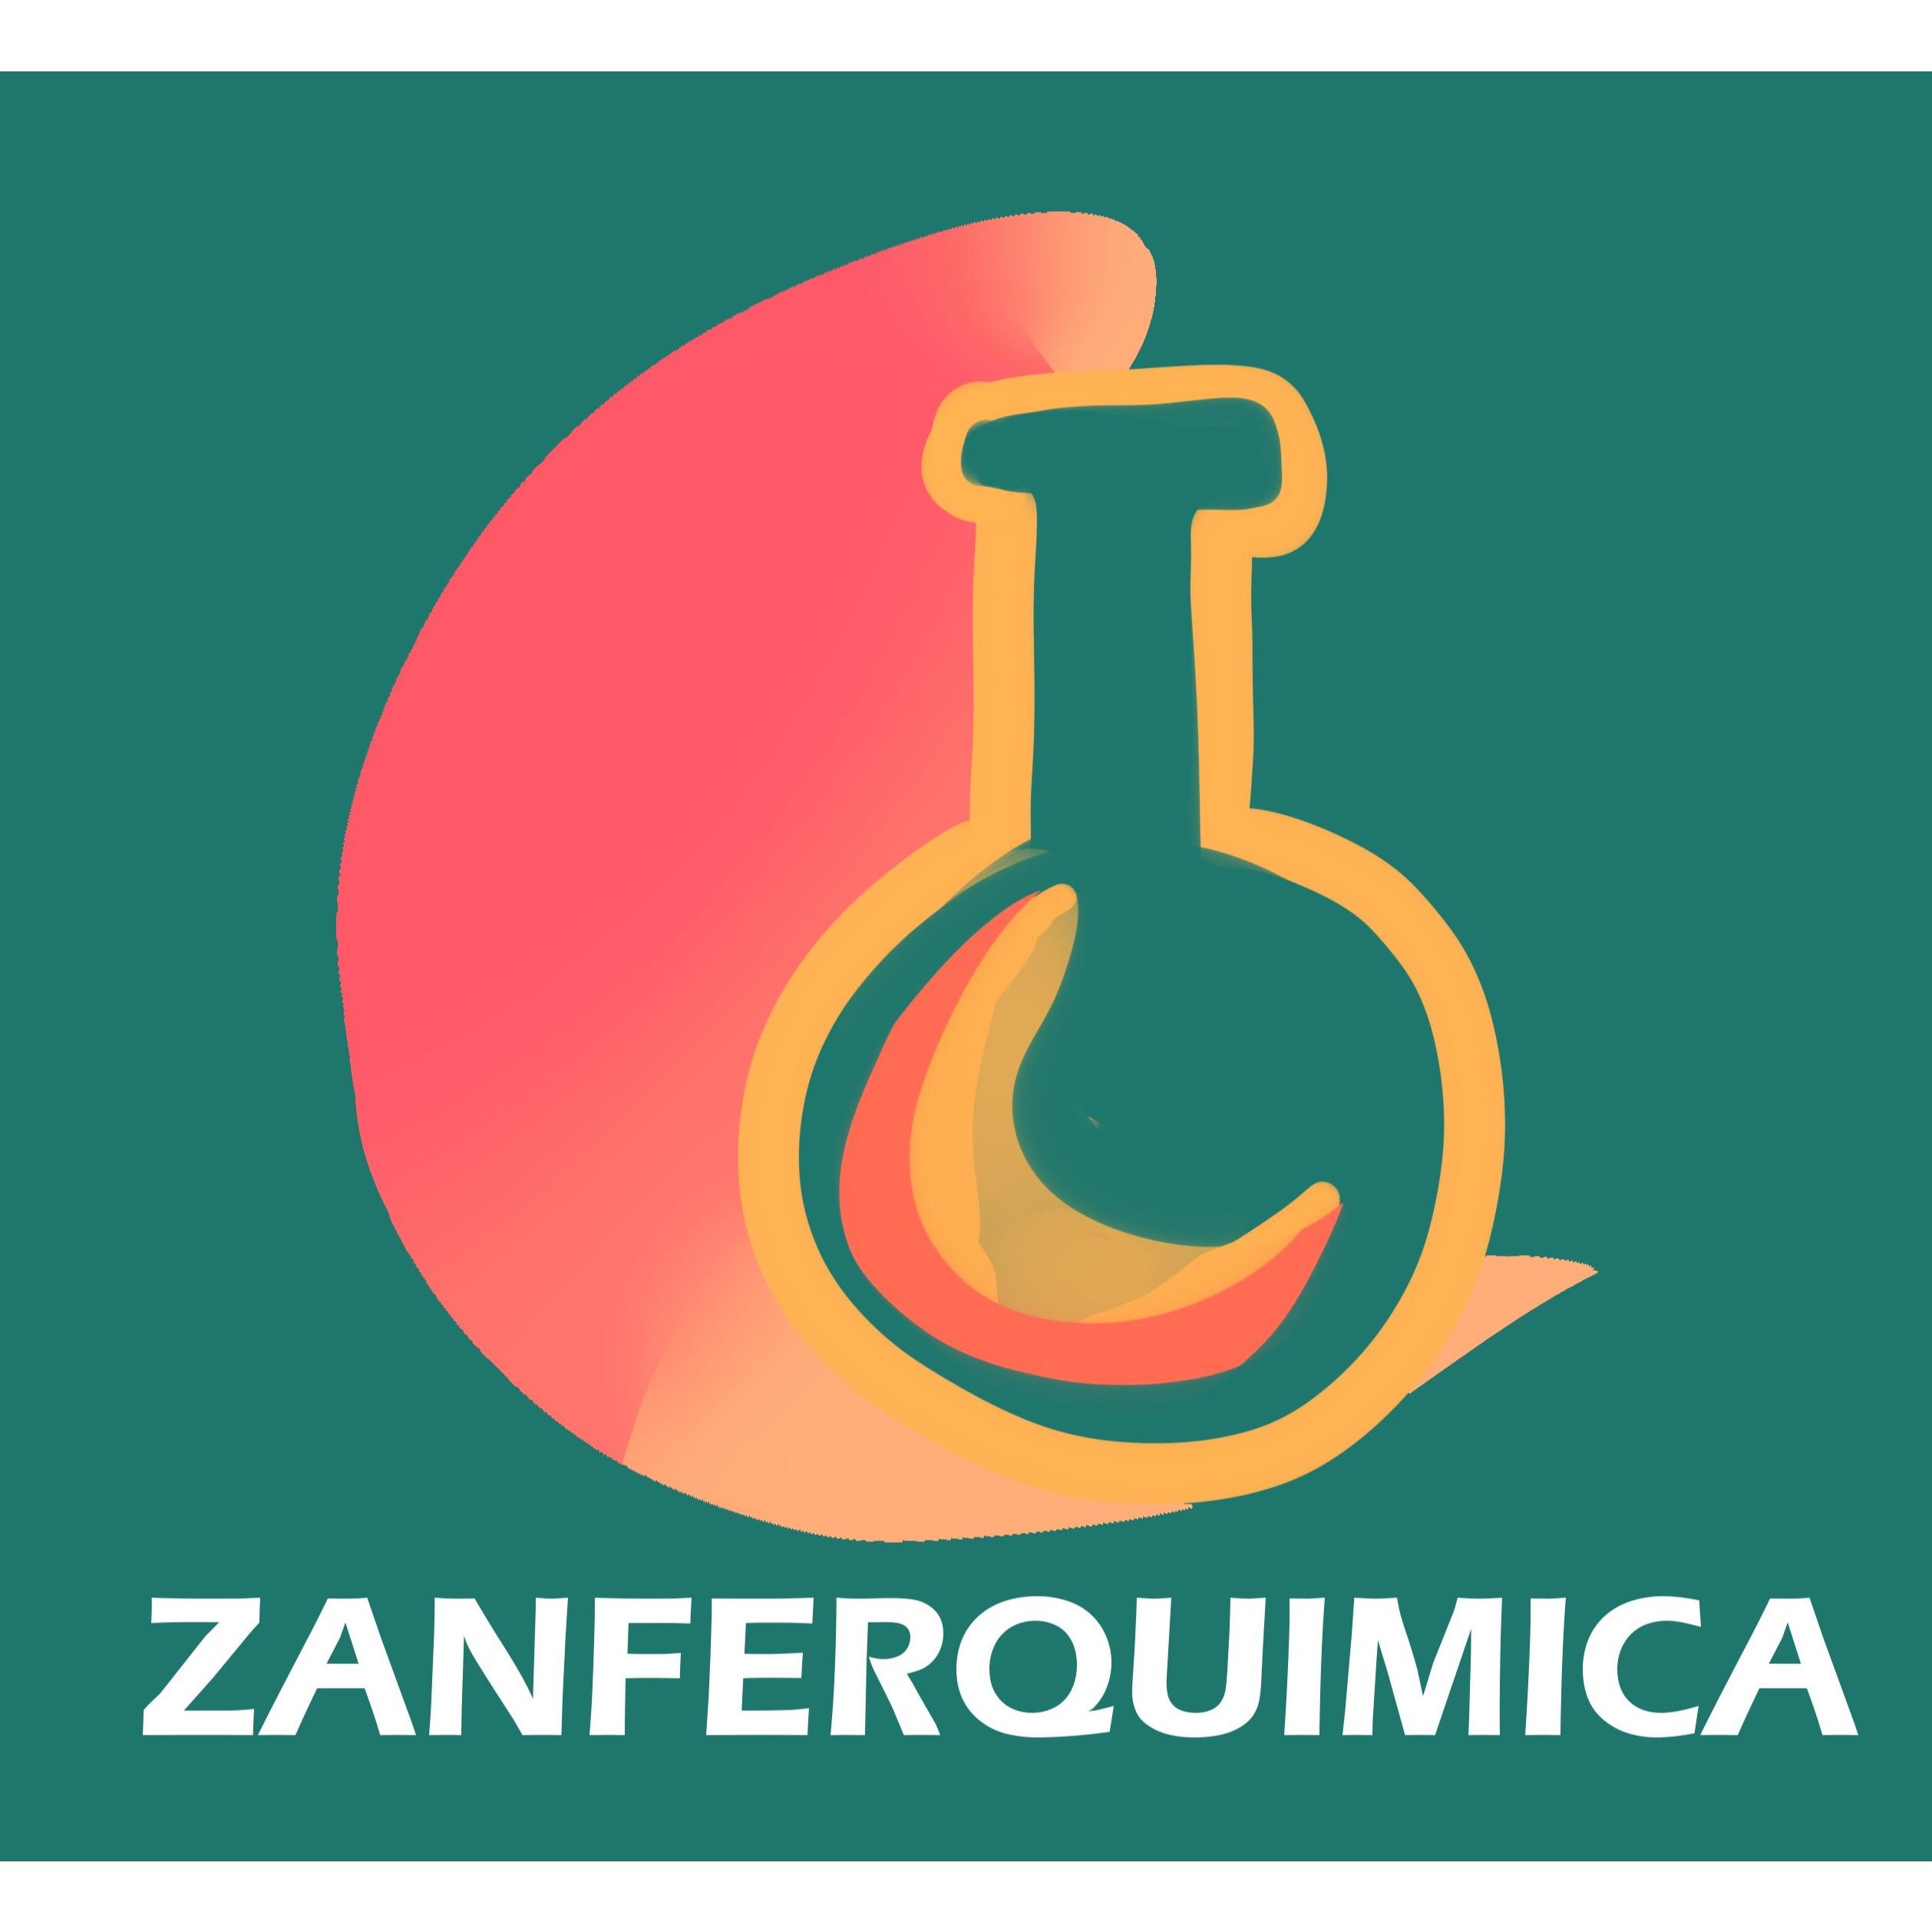 ZANFERQUIMICA Cuautitlán